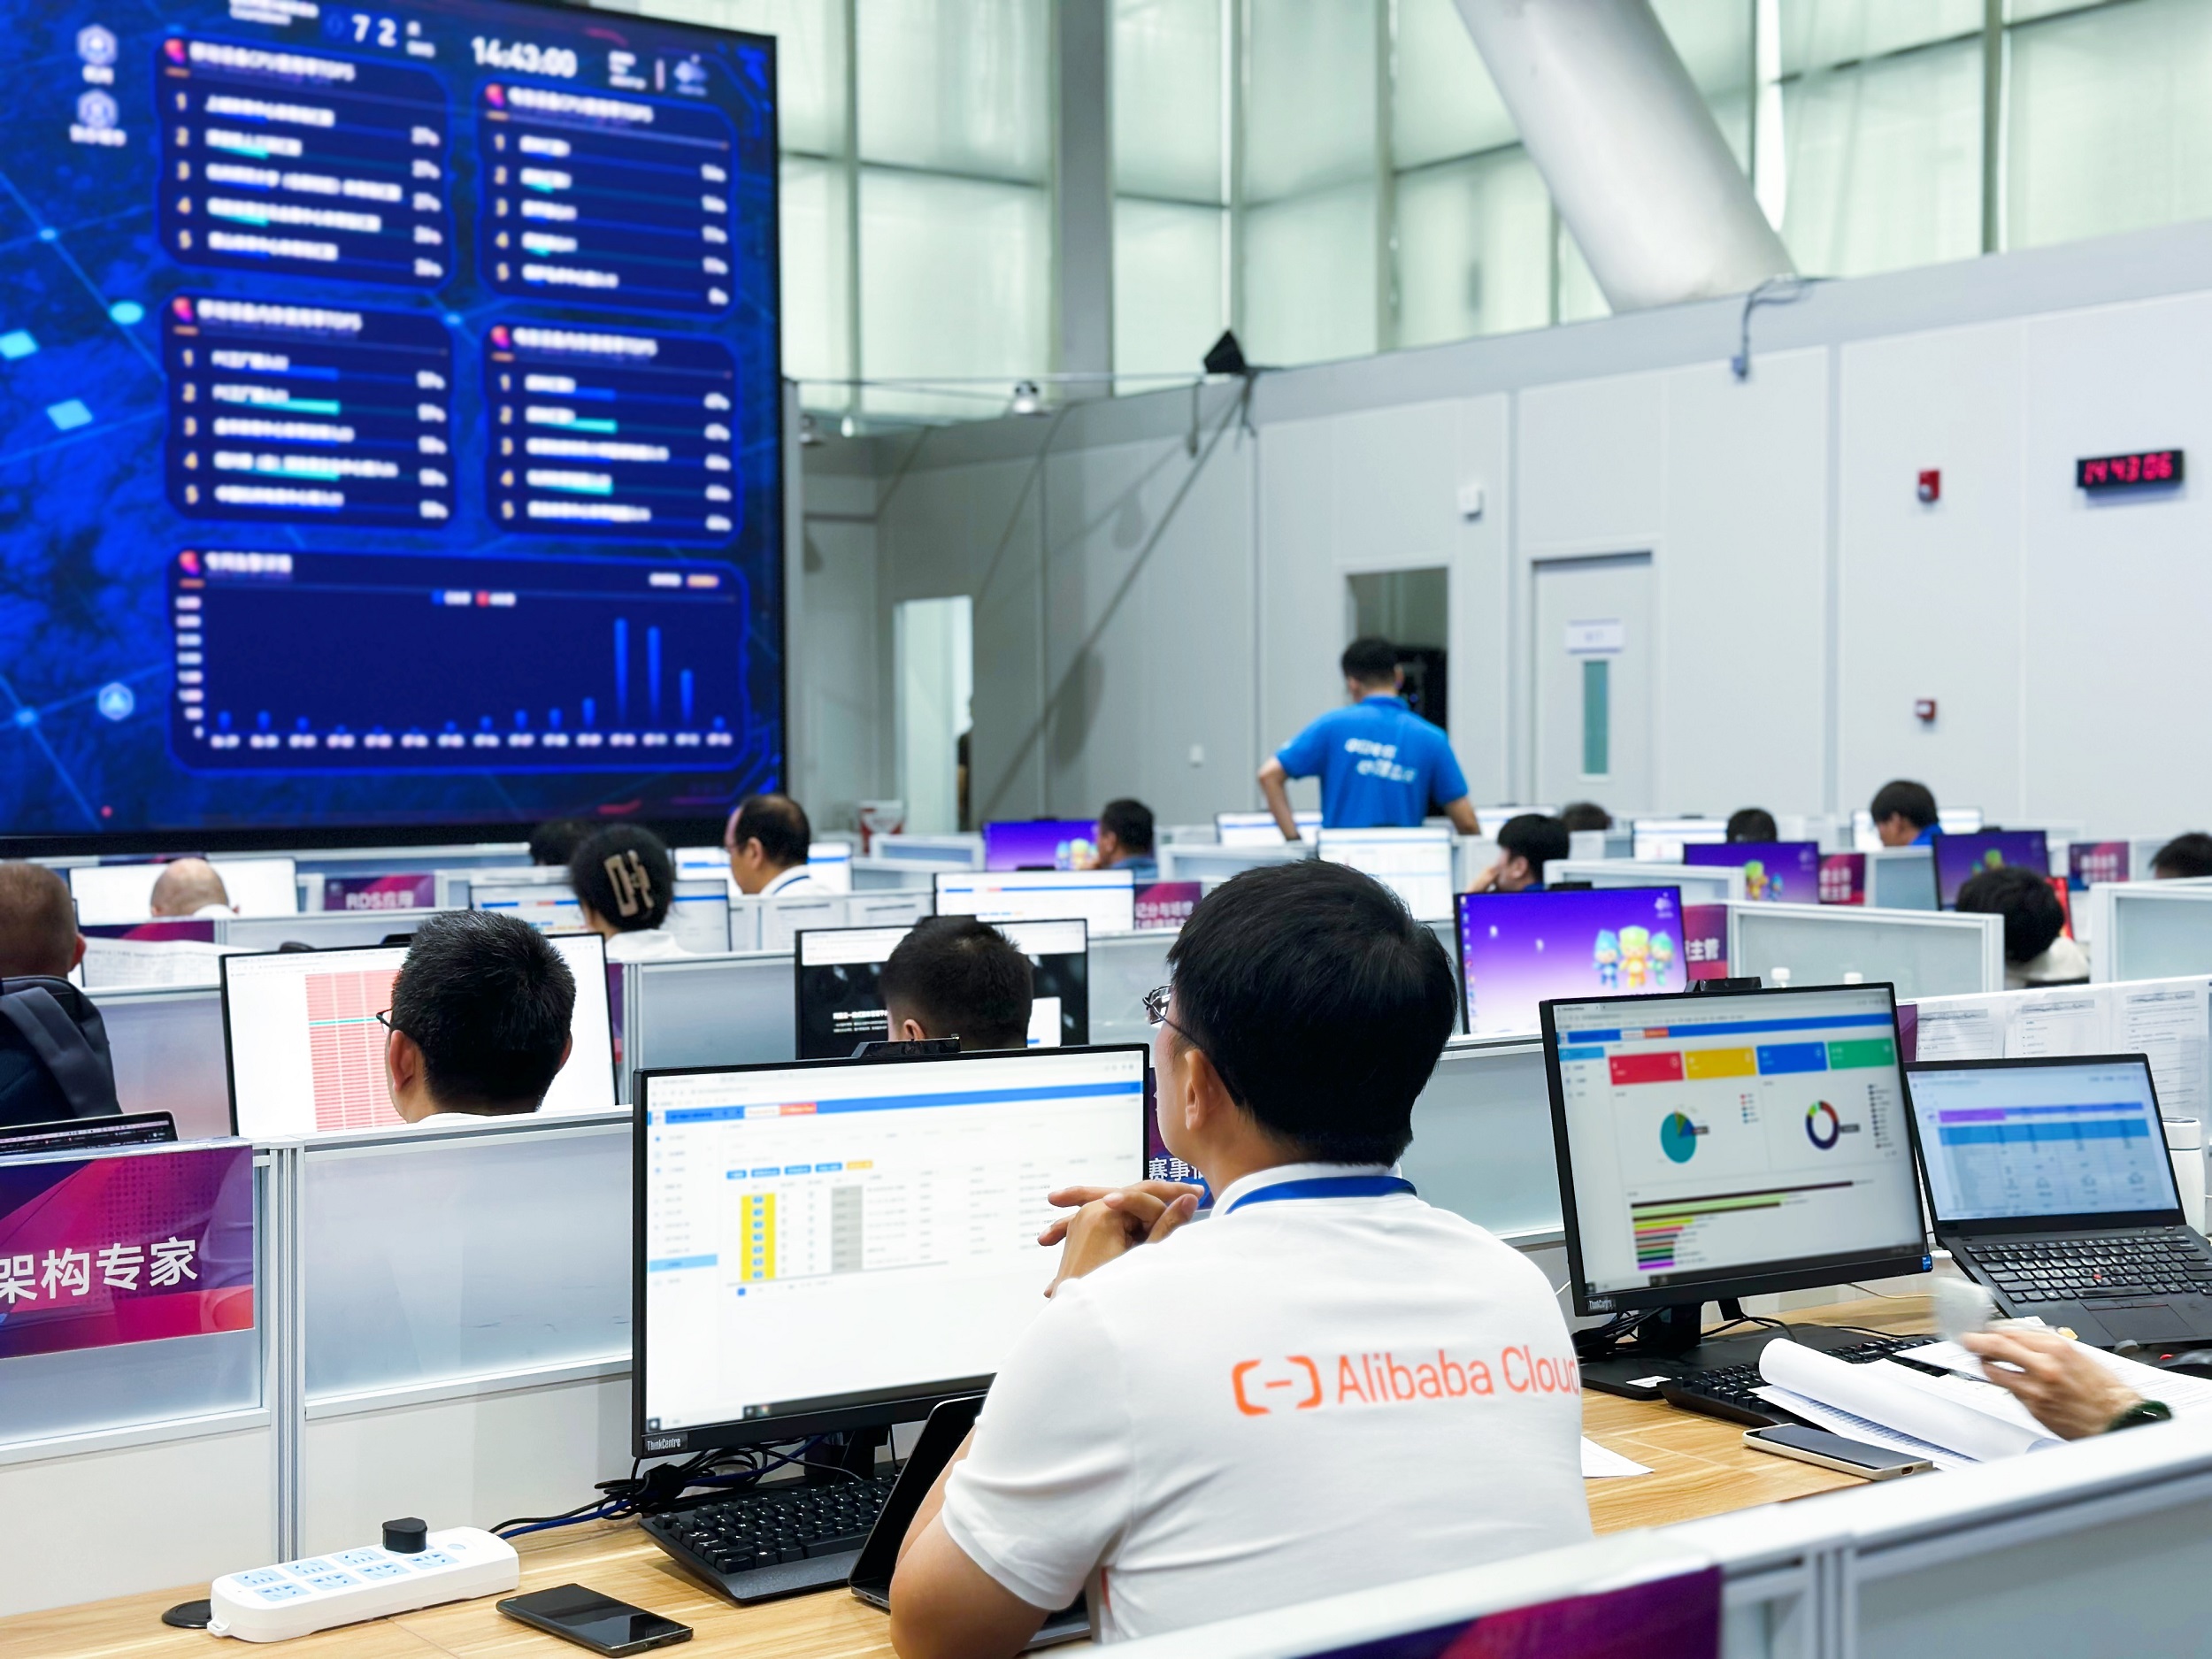 ครั้งแรกที่ระบบสำคัญหลักของ Asian Games ทำงานบน Alibaba Cloud สนับสนุน Hangzhou Asian Games ทรานส์ฟอร์มสู่ดิจิทัล